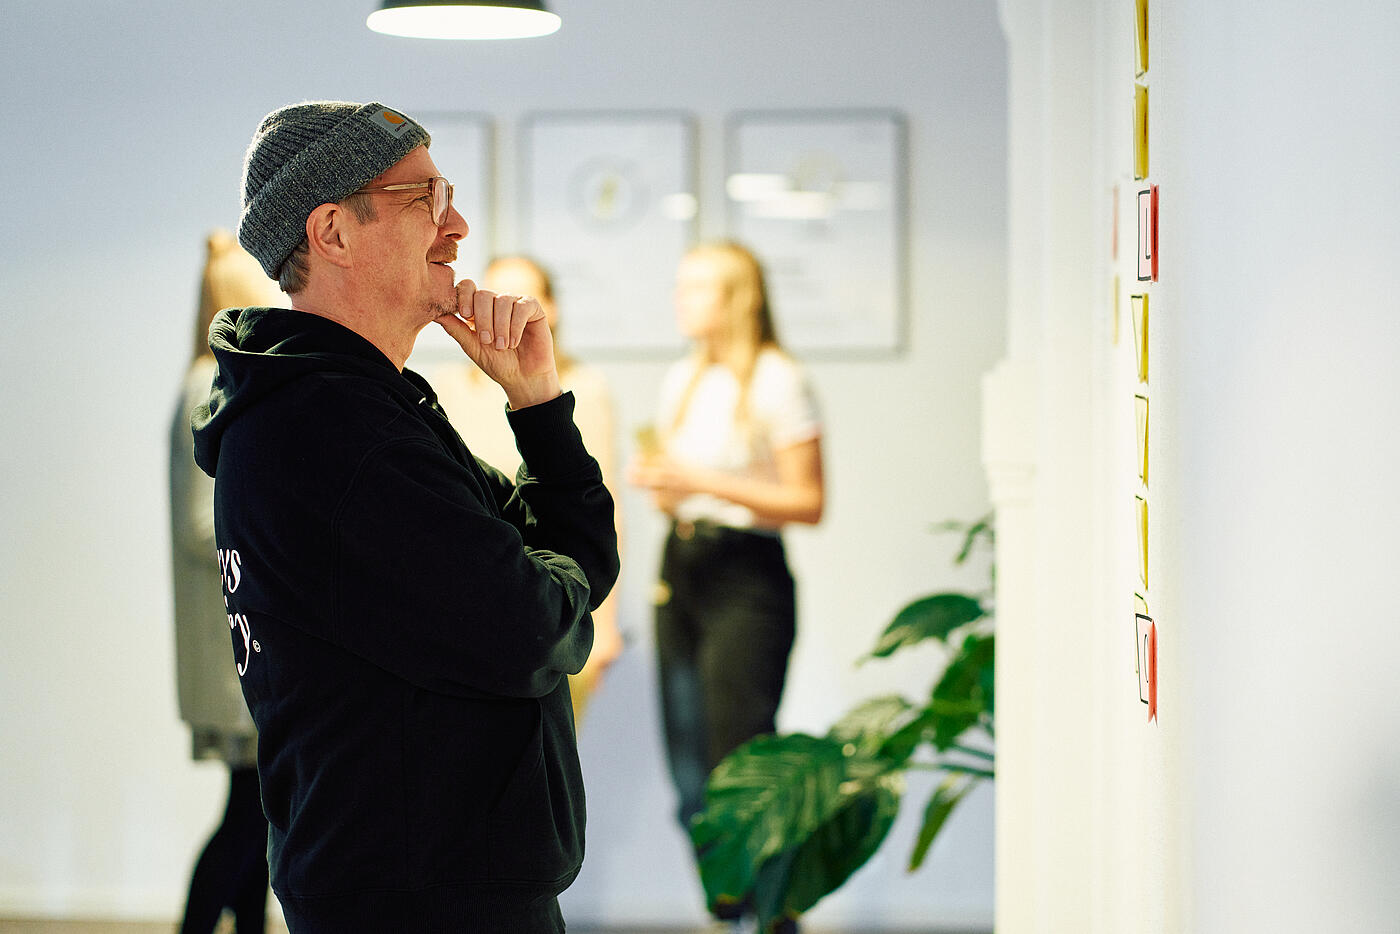 Ein Mitarbeiter von visuellverstehen steht nachdenklich vor einer Wand voller Sticky Notes.